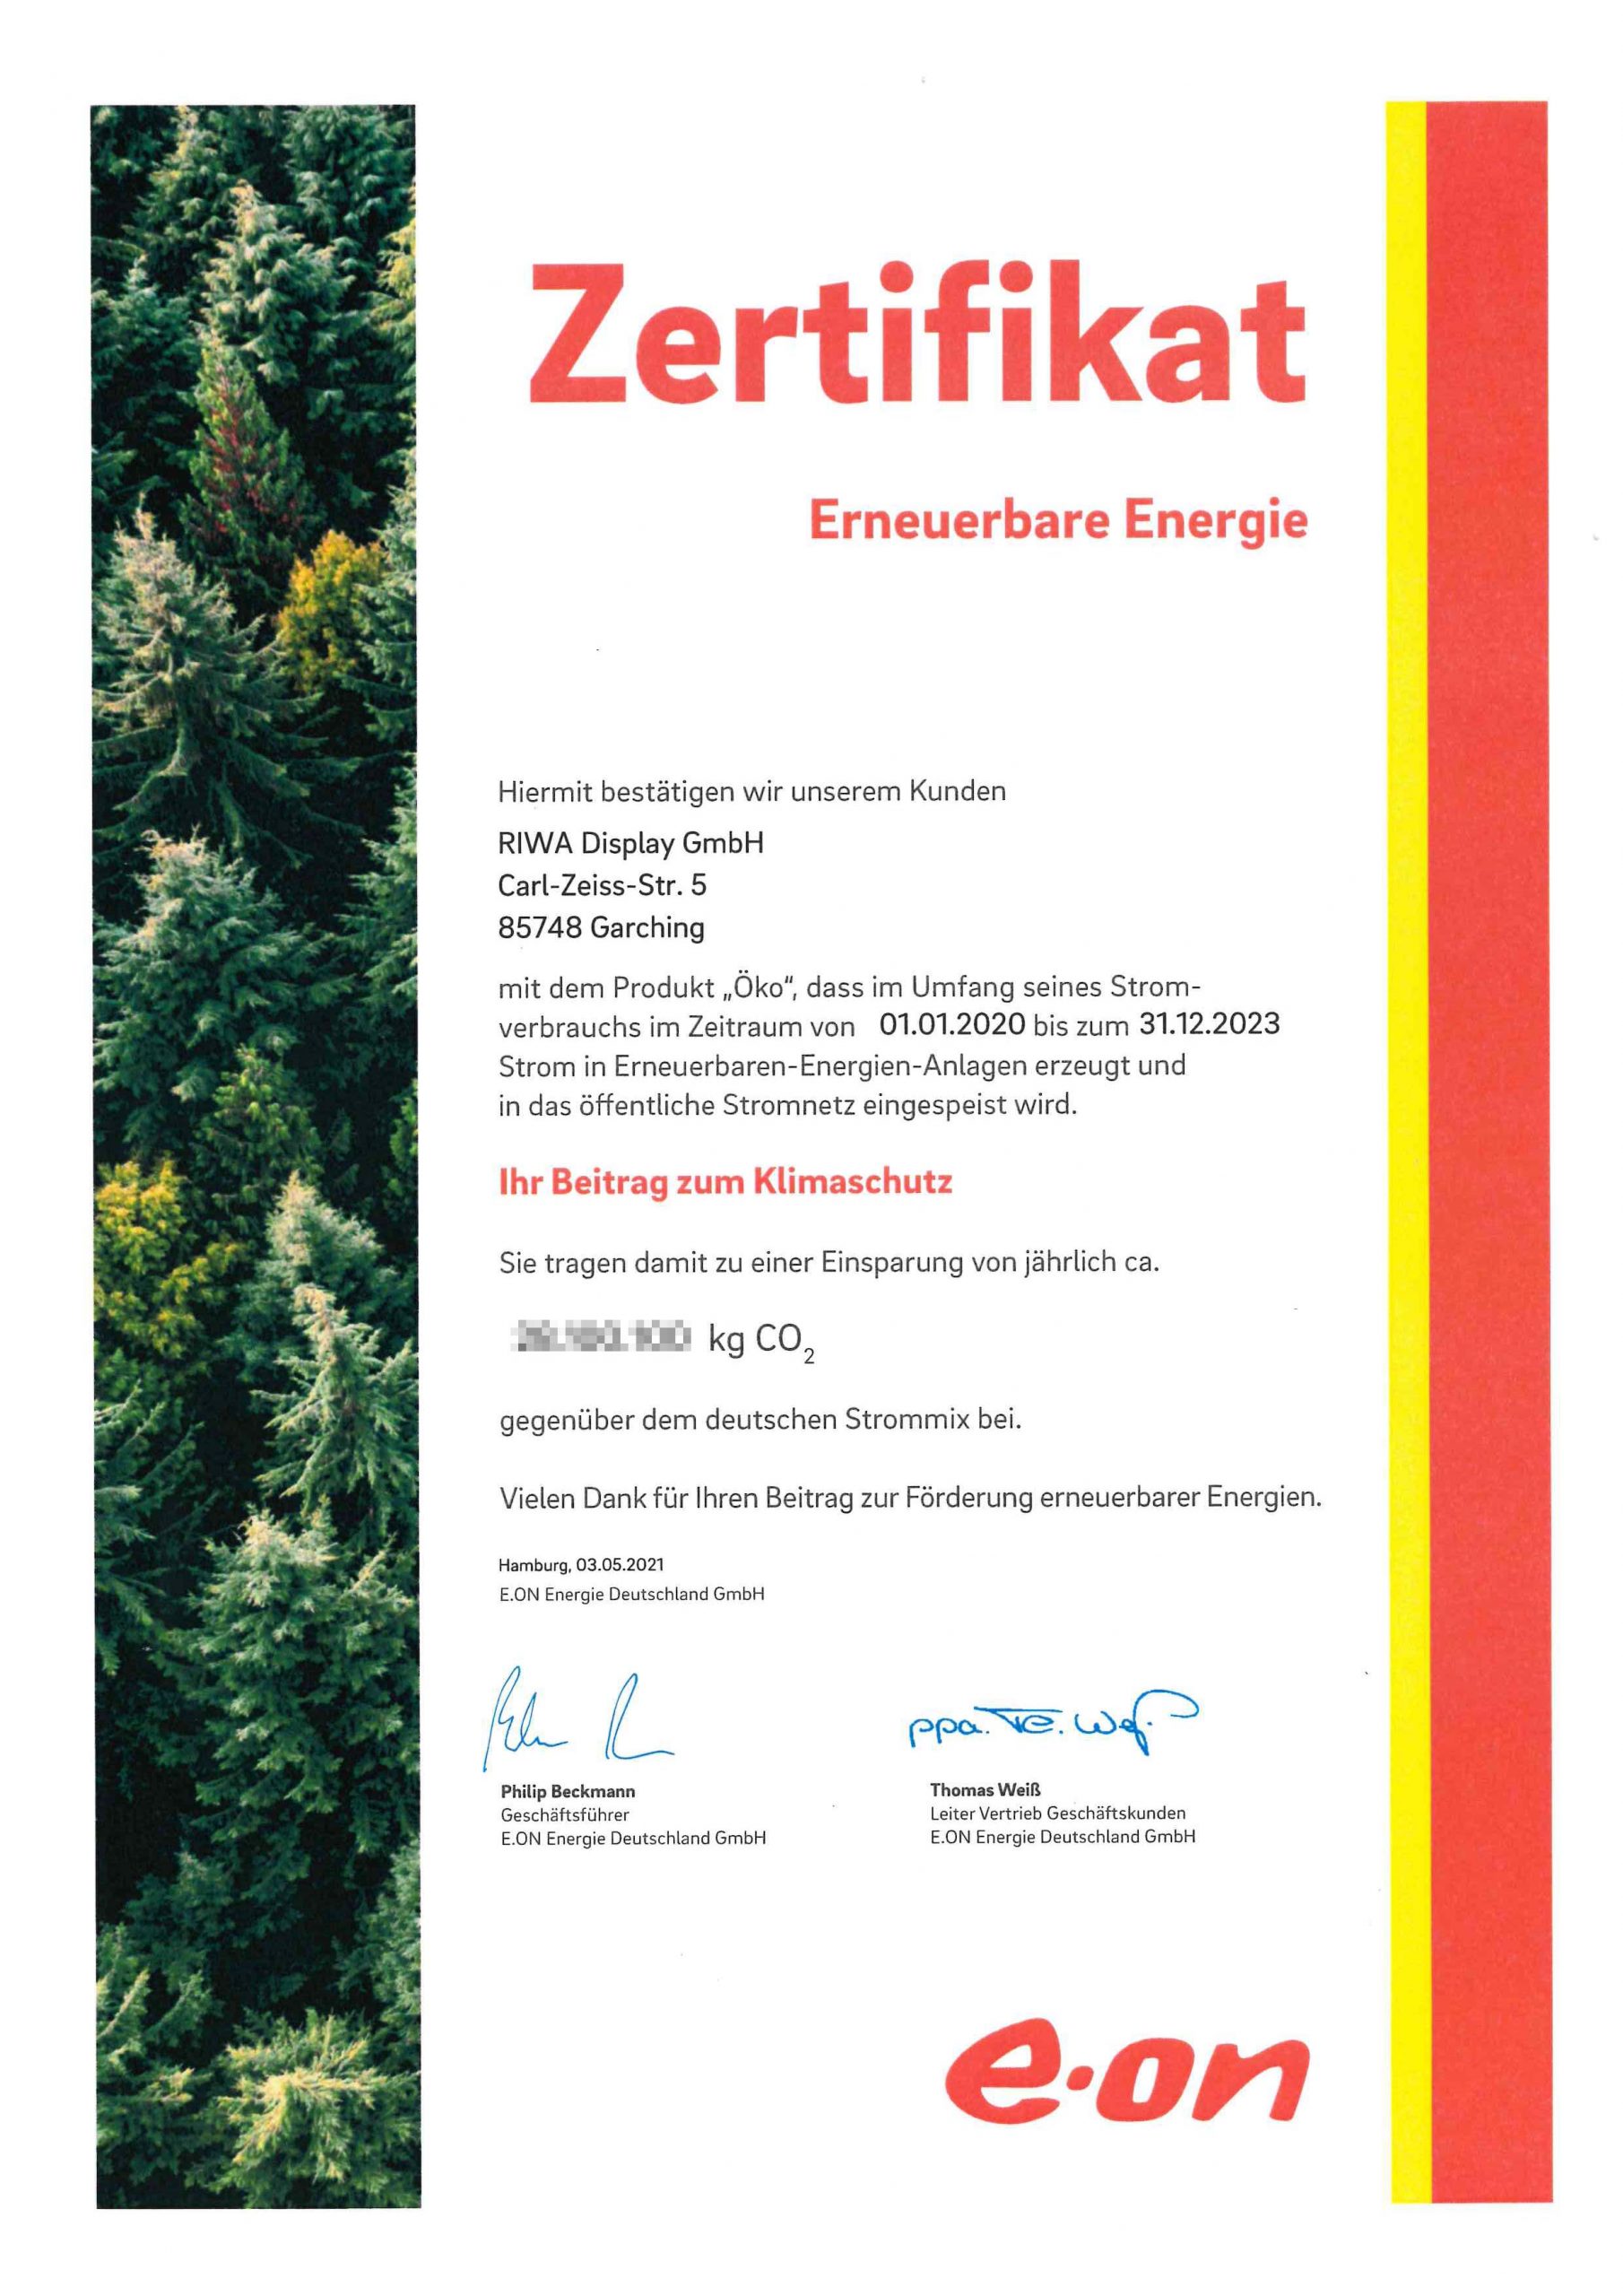 Zertifikat für die langjährige Verwendung von Strom aus erneuerbaren Energiequellen für die Firma RIWA Display GmbH.